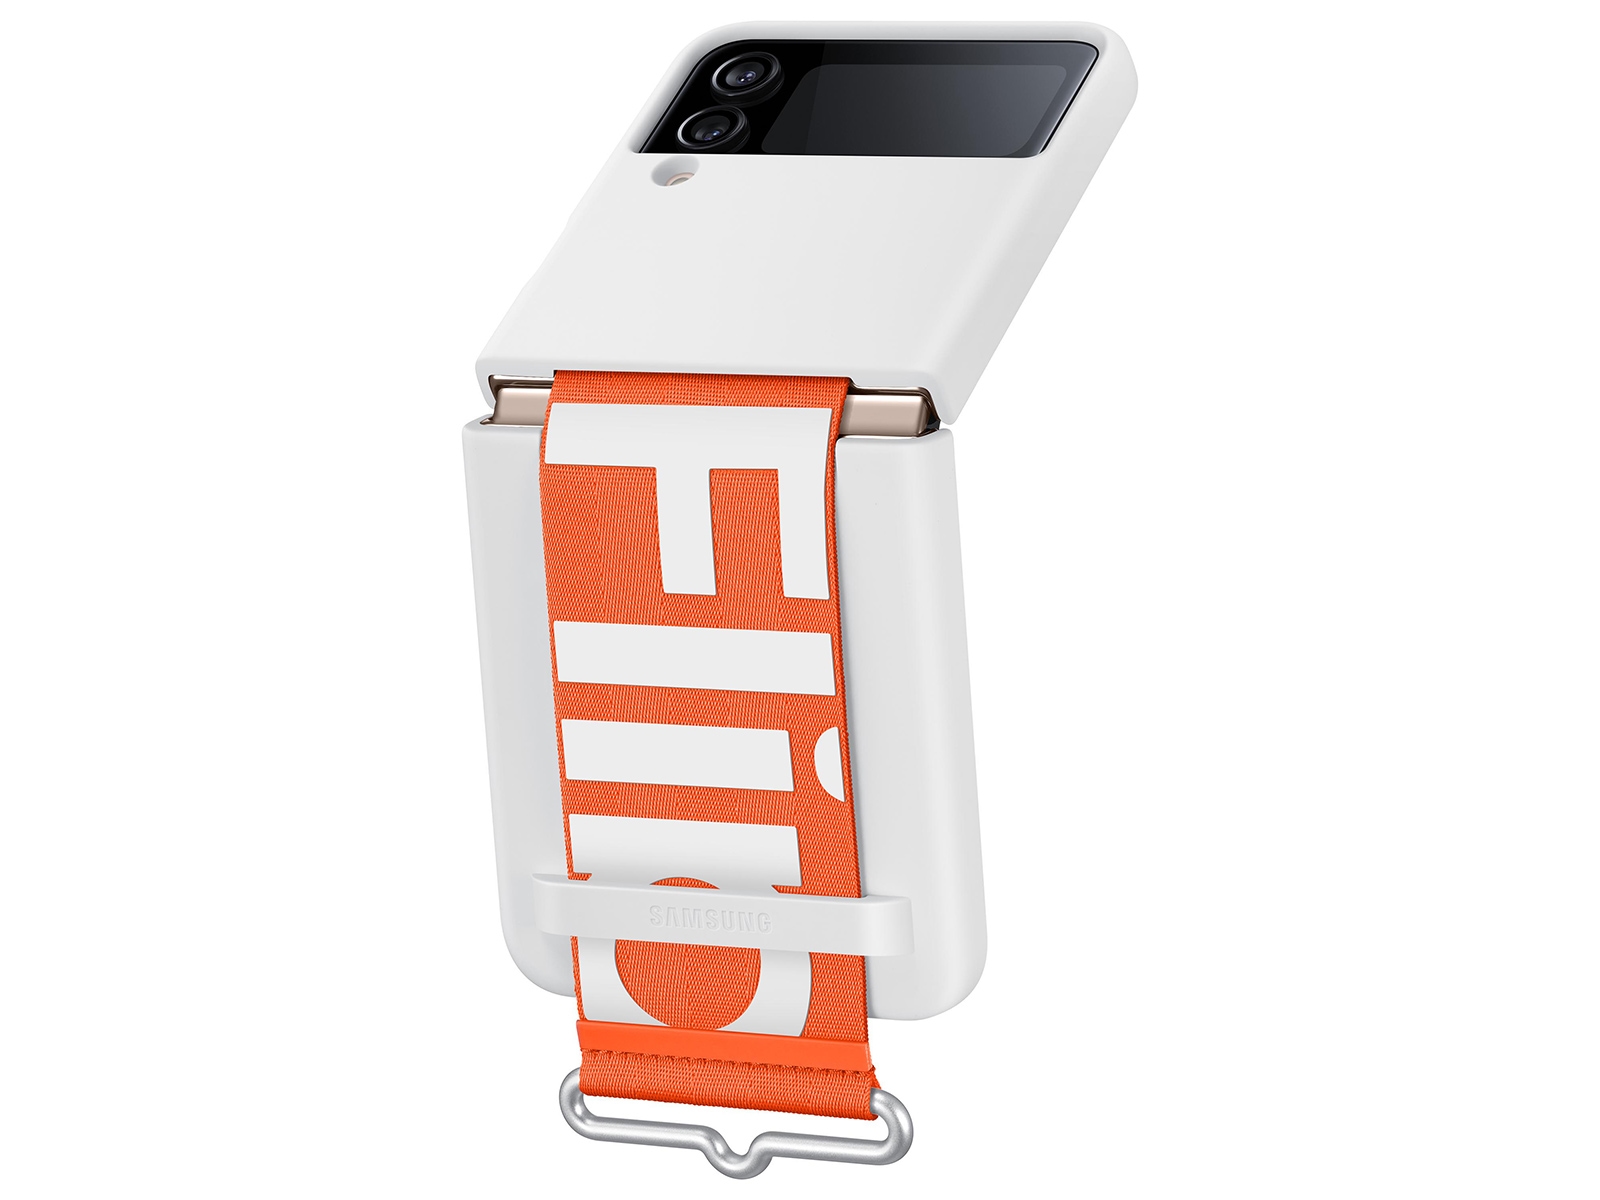 Flip 4 Bespokesamsung Galaxy Z Flip 4/3 5g Case With Strap